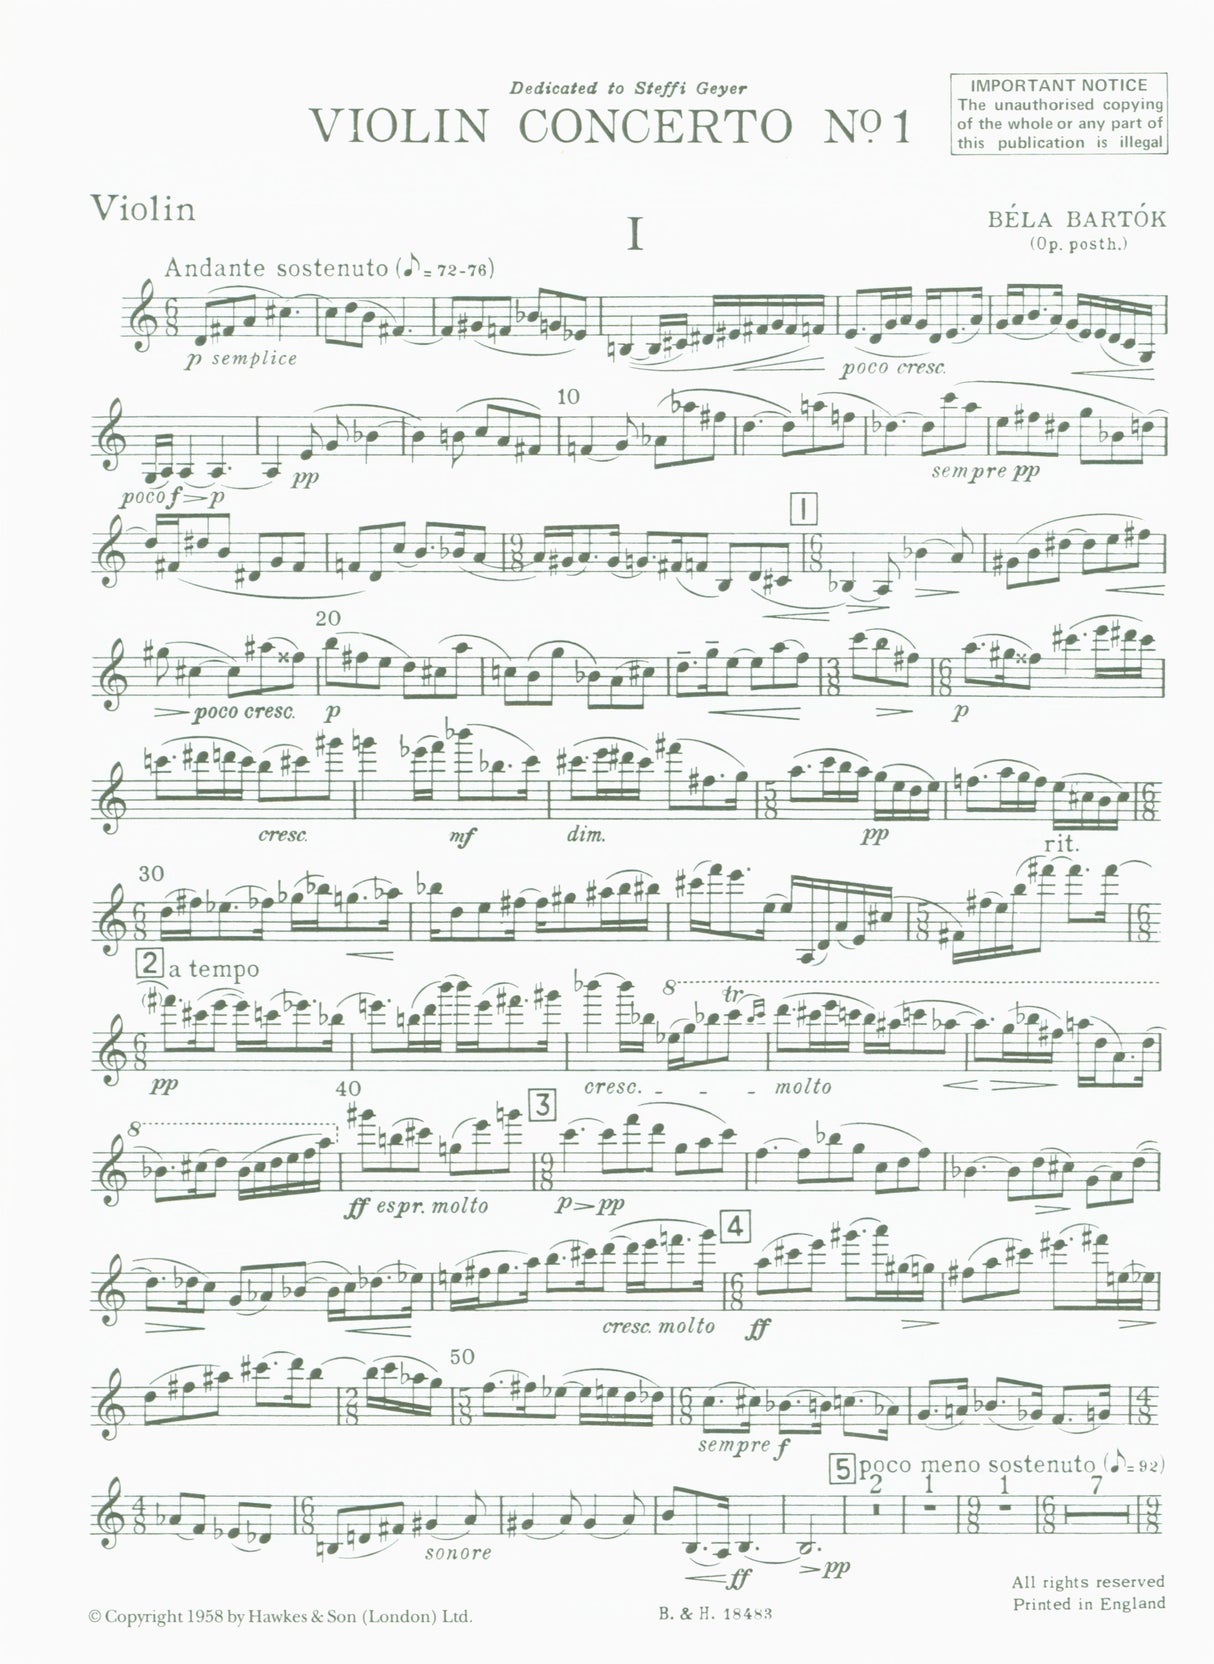 Bartók: Violin Concerto No. 1, Op. posth.